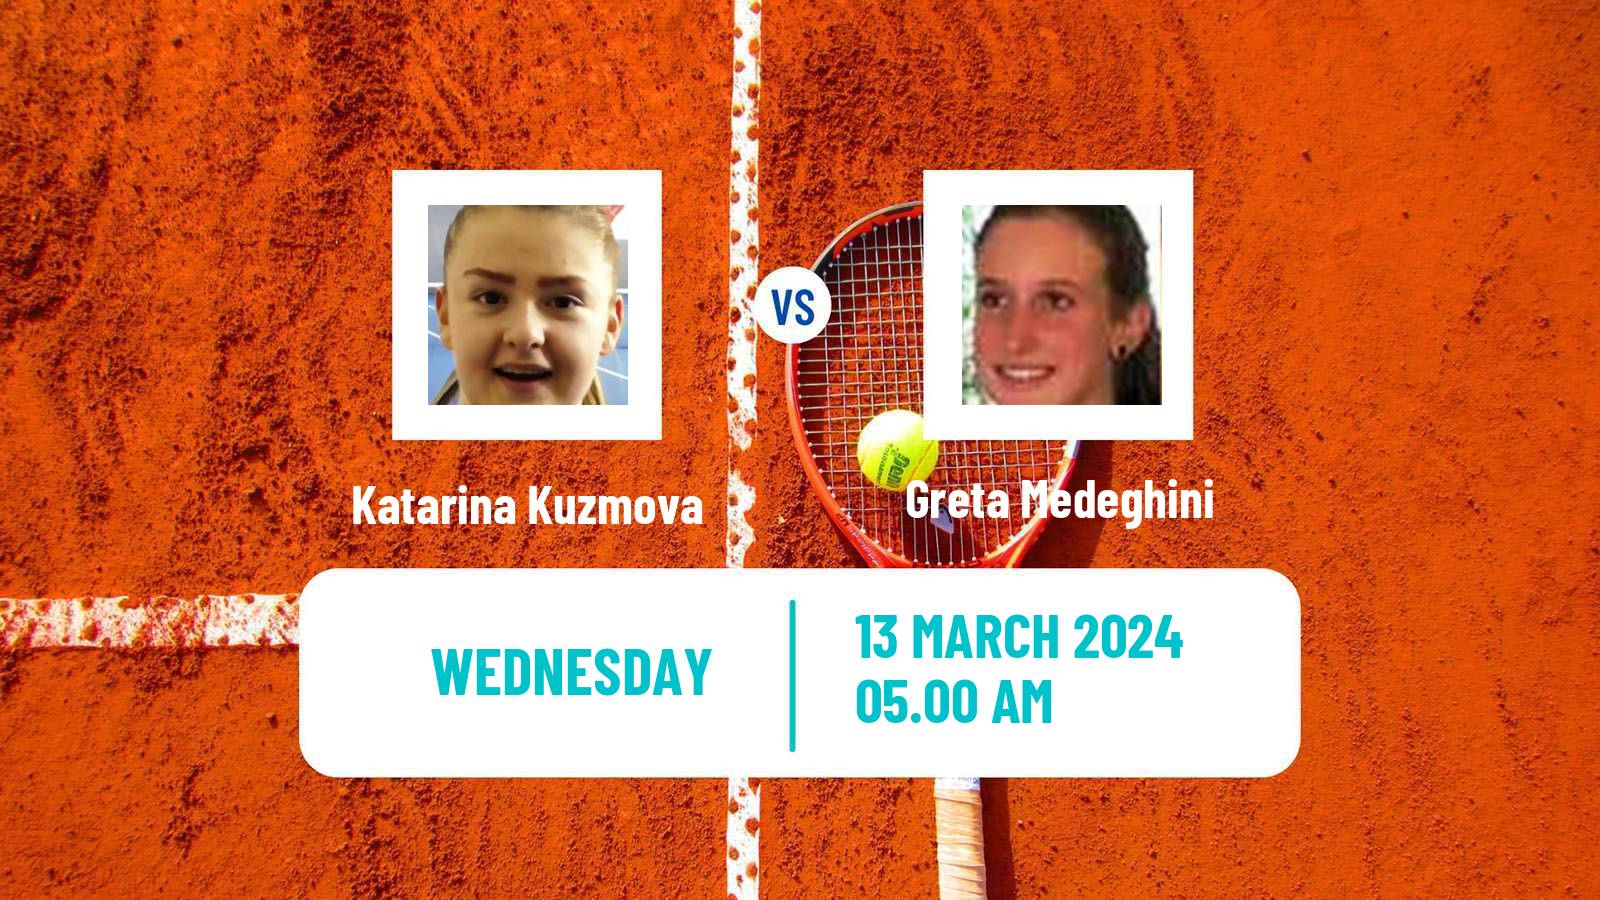 Tennis ITF W15 Sharm Elsheikh 6 Women Katarina Kuzmova - Greta Medeghini